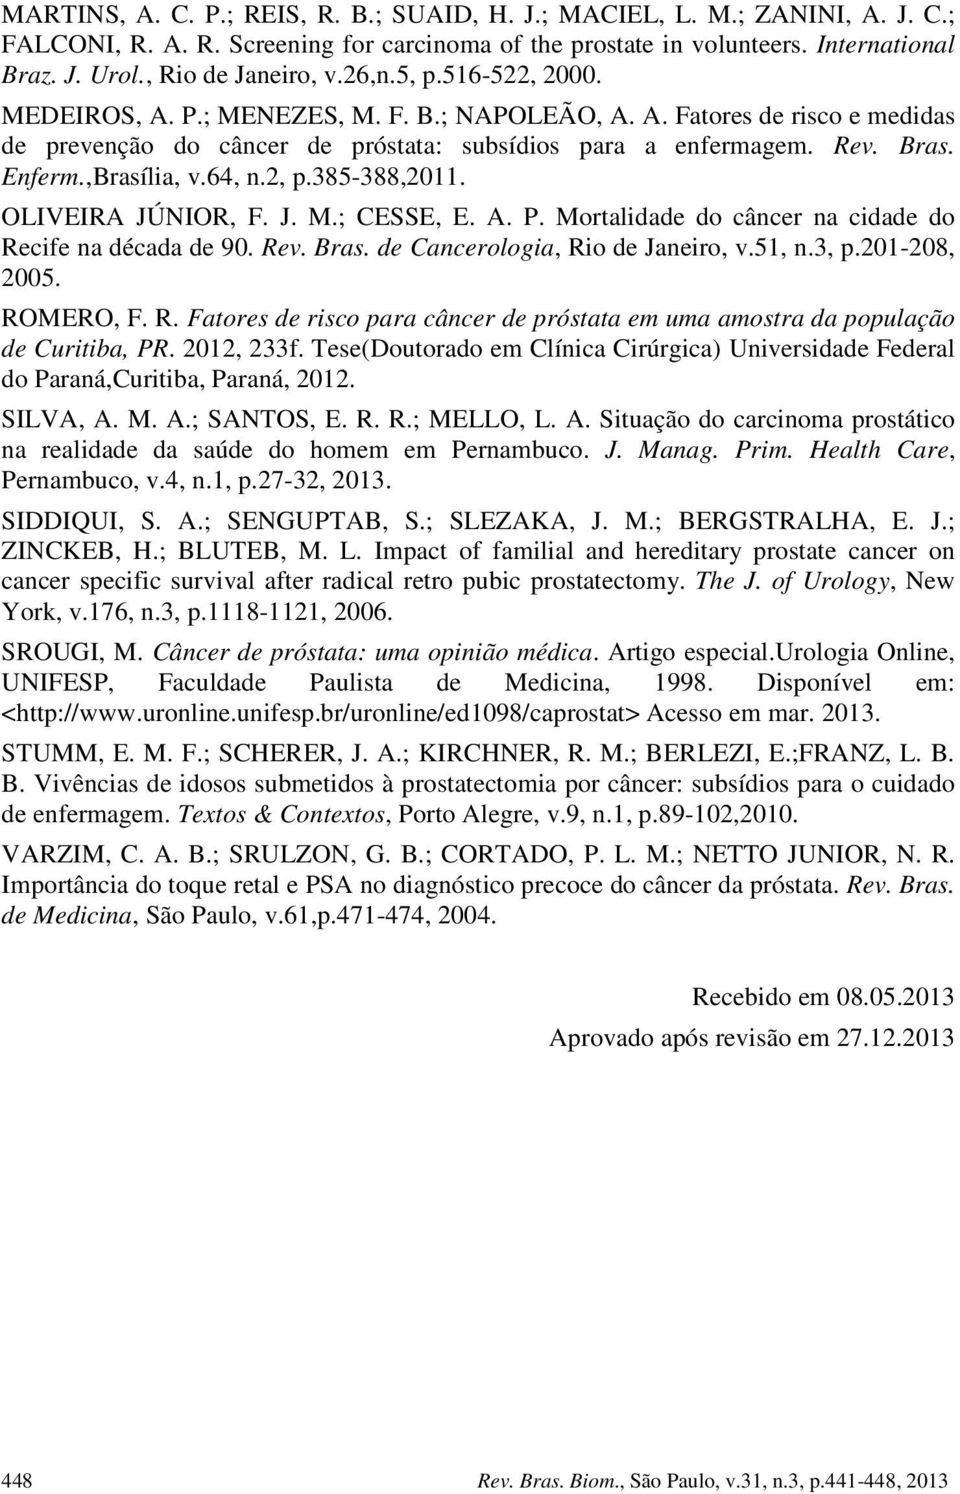 64, n.2, p.385-388,2011. OLIVEIRA JÚNIOR, F. J. M.; CESSE, E. A. P. Mortalidade do câncer na cidade do Recife na década de 90. Rev. Bras. de Cancerologia, Rio de Janeiro, v.51, n.3, p.201-208, 2005.